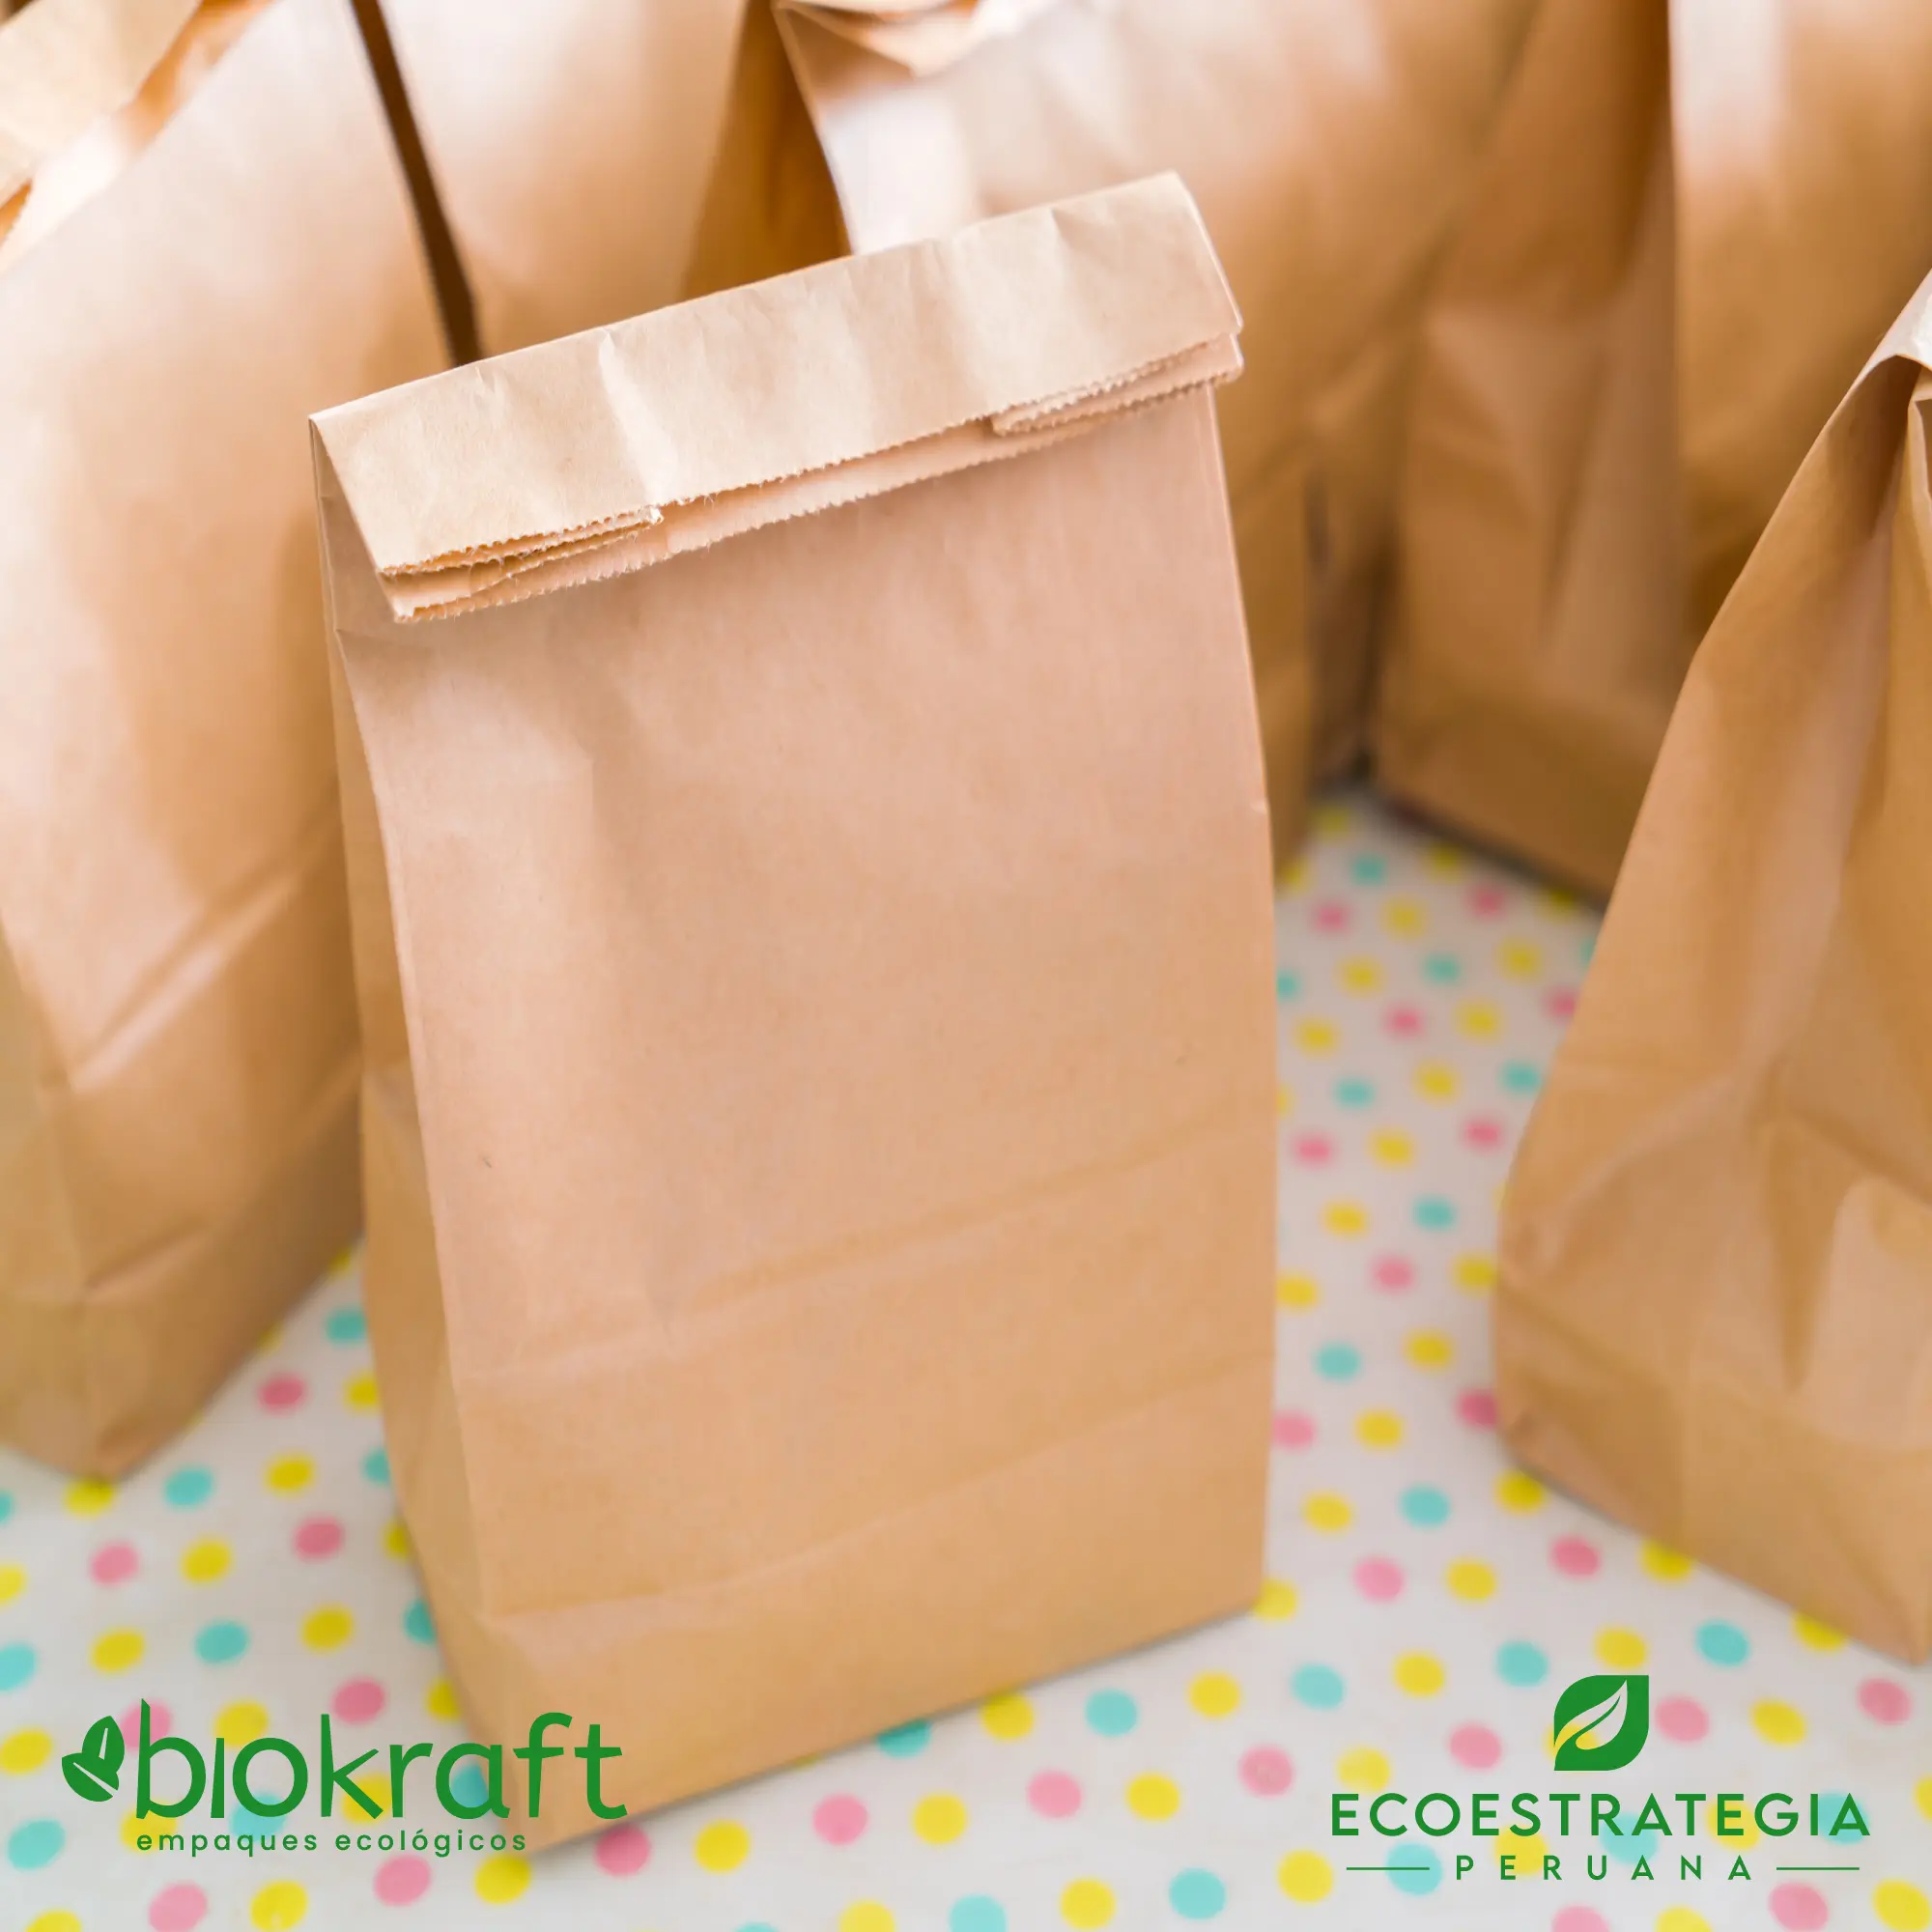 Esta bolsa de papel Kraft tiene un grosor de 70 gr y un peso de 22gr. Bolsa biodegradable de excelente gramaje y medida, ideal para comidas y productos ligeros. Cotiza ahora tus bolsas Kraft número 20